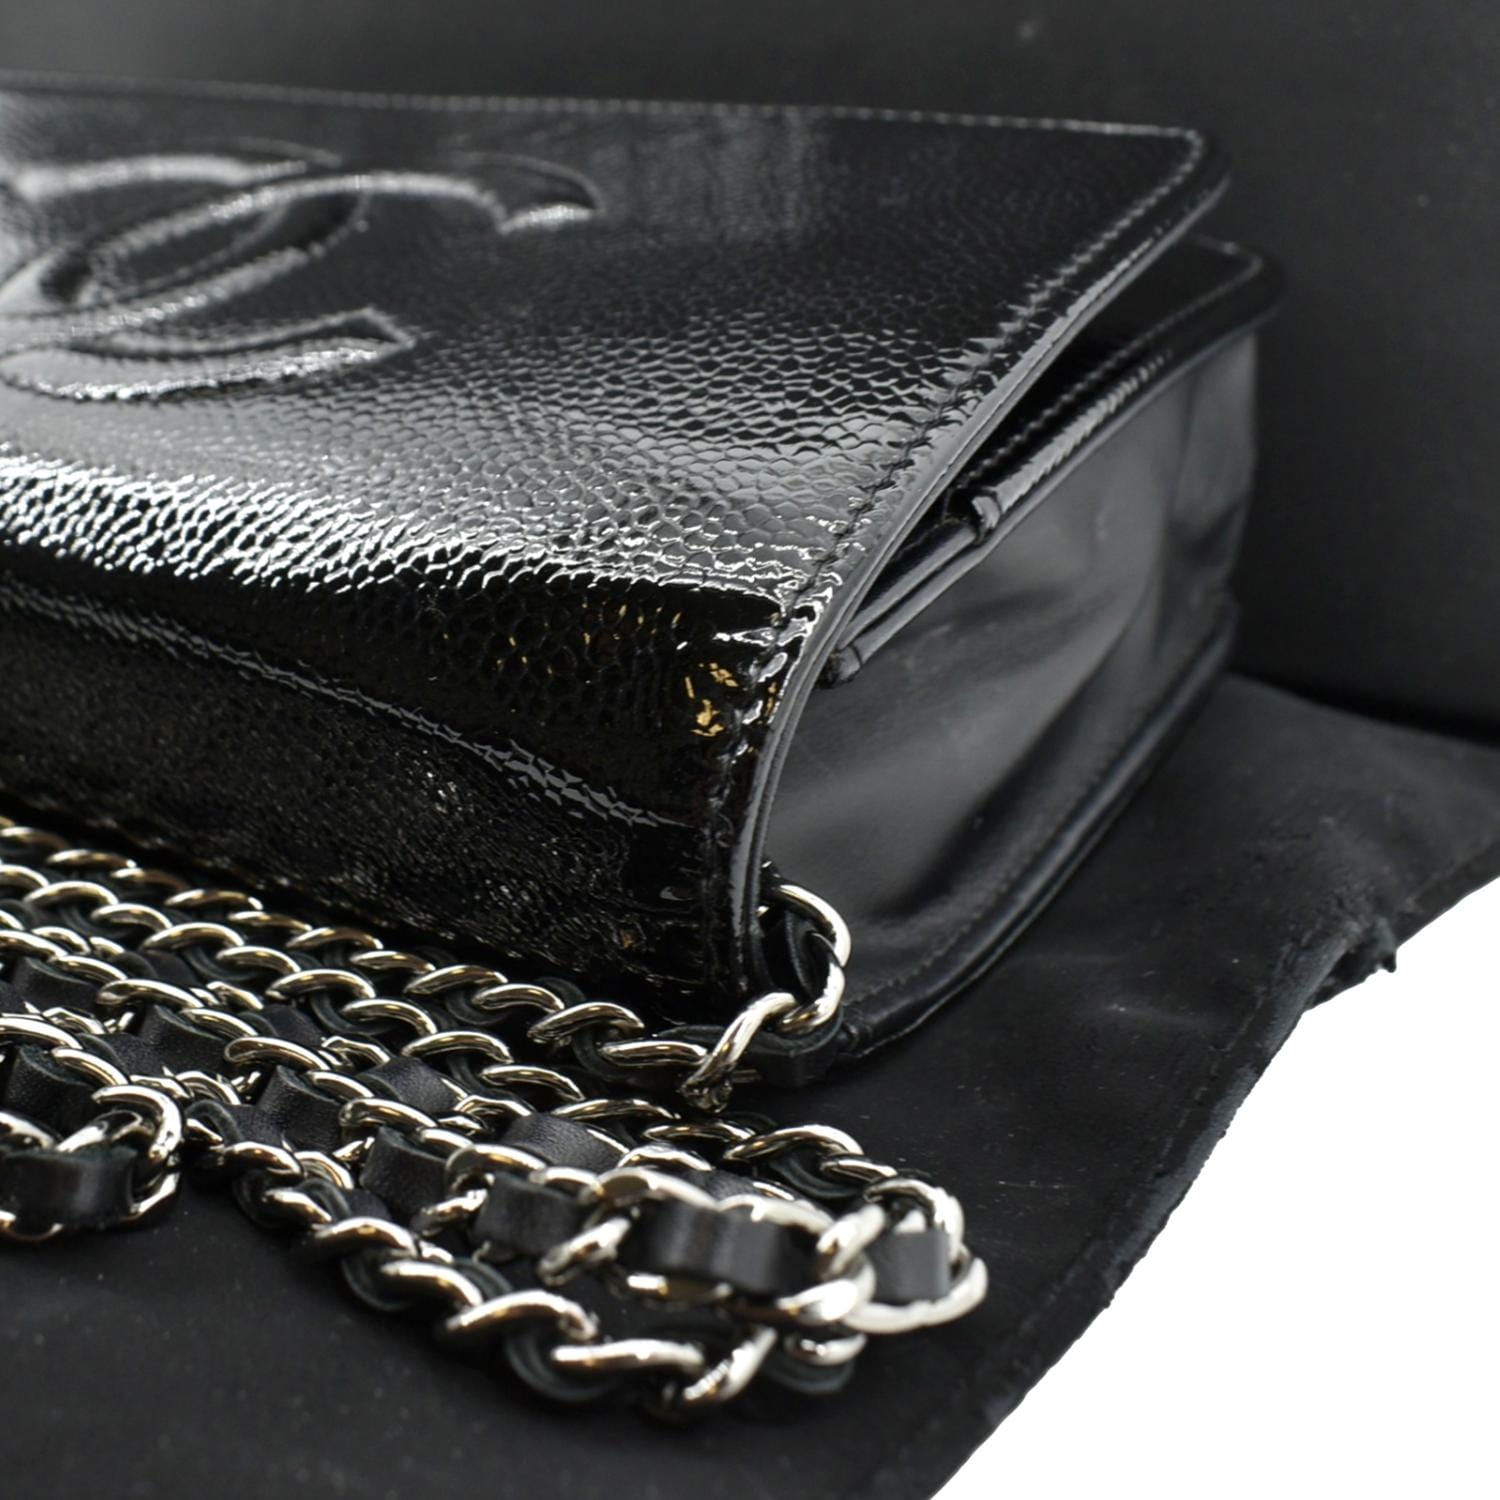 Chanel CC WOC Caviar Leather Wallet Chain Shoulder Bag